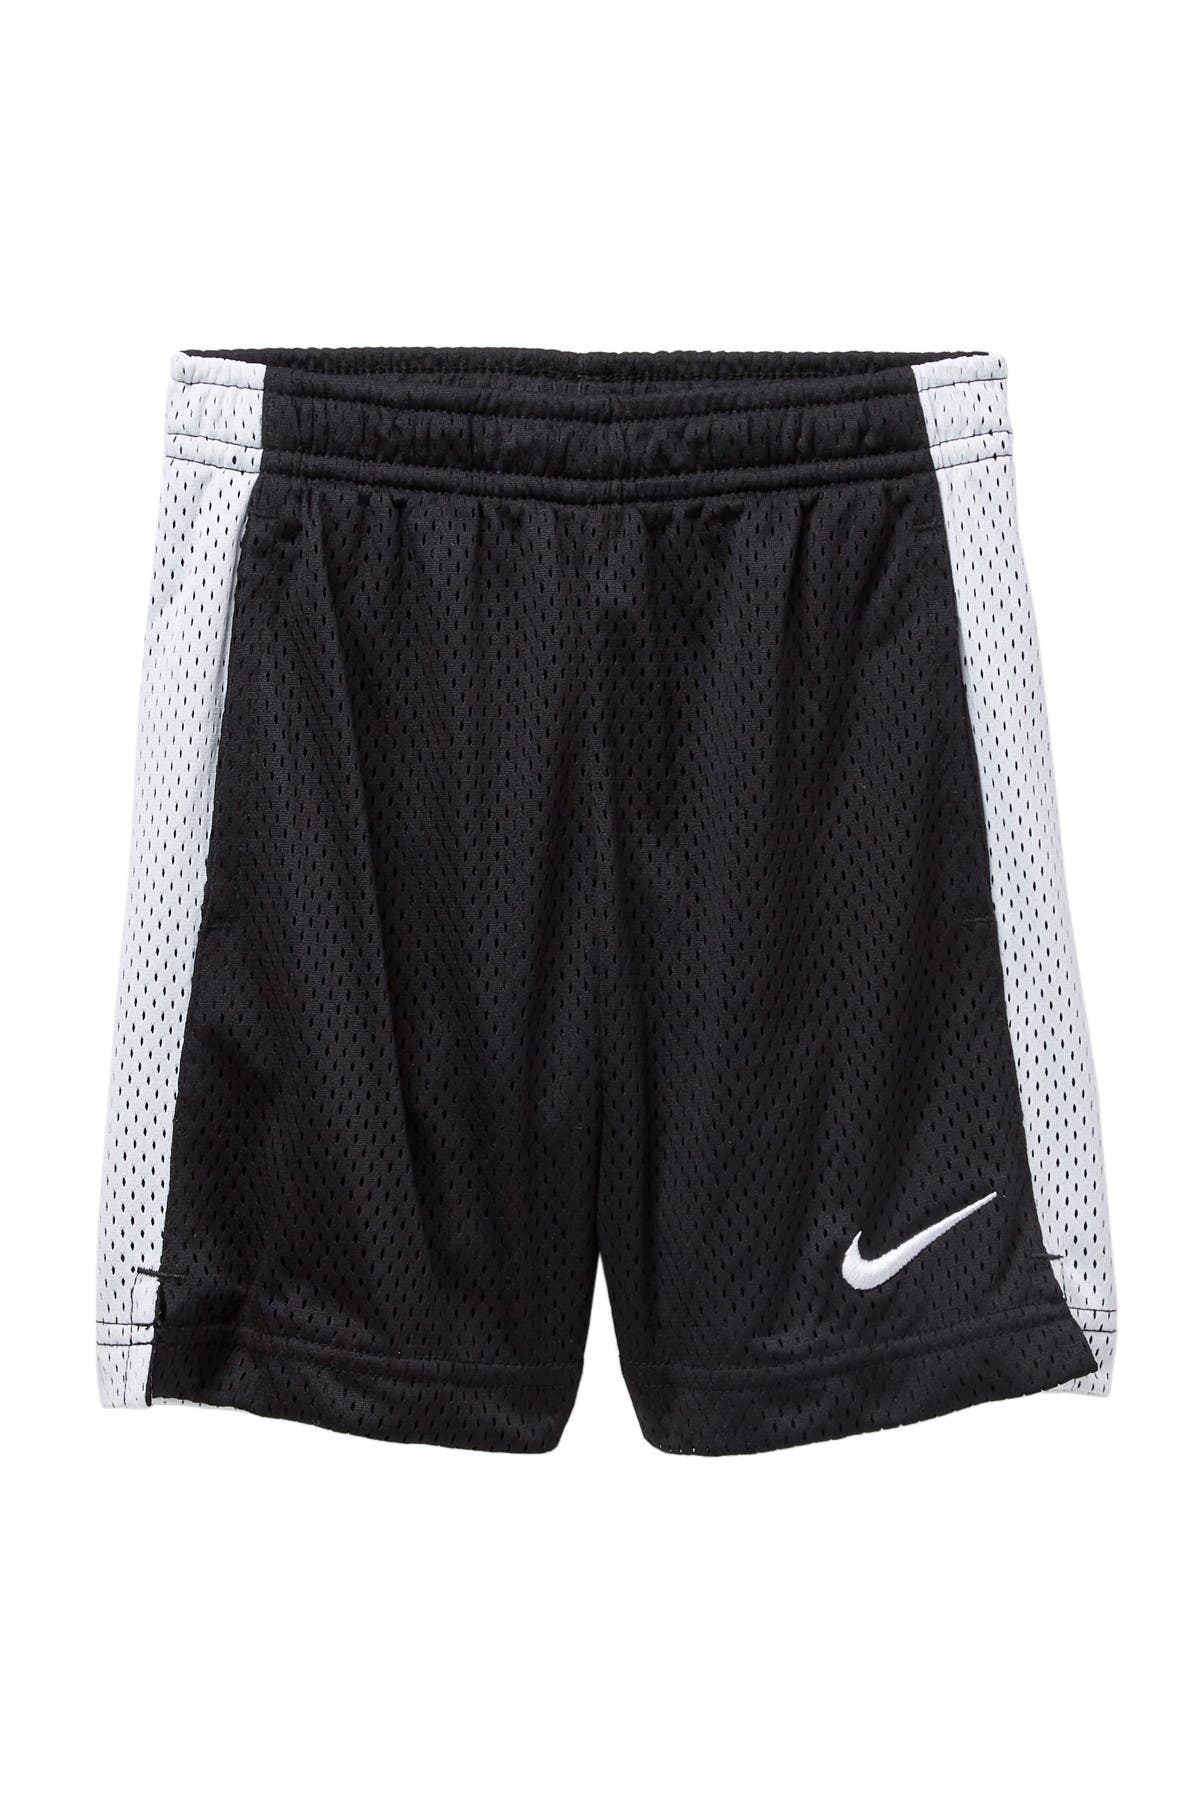 Nike | Monster Mesh Shorts | Nordstrom Rack